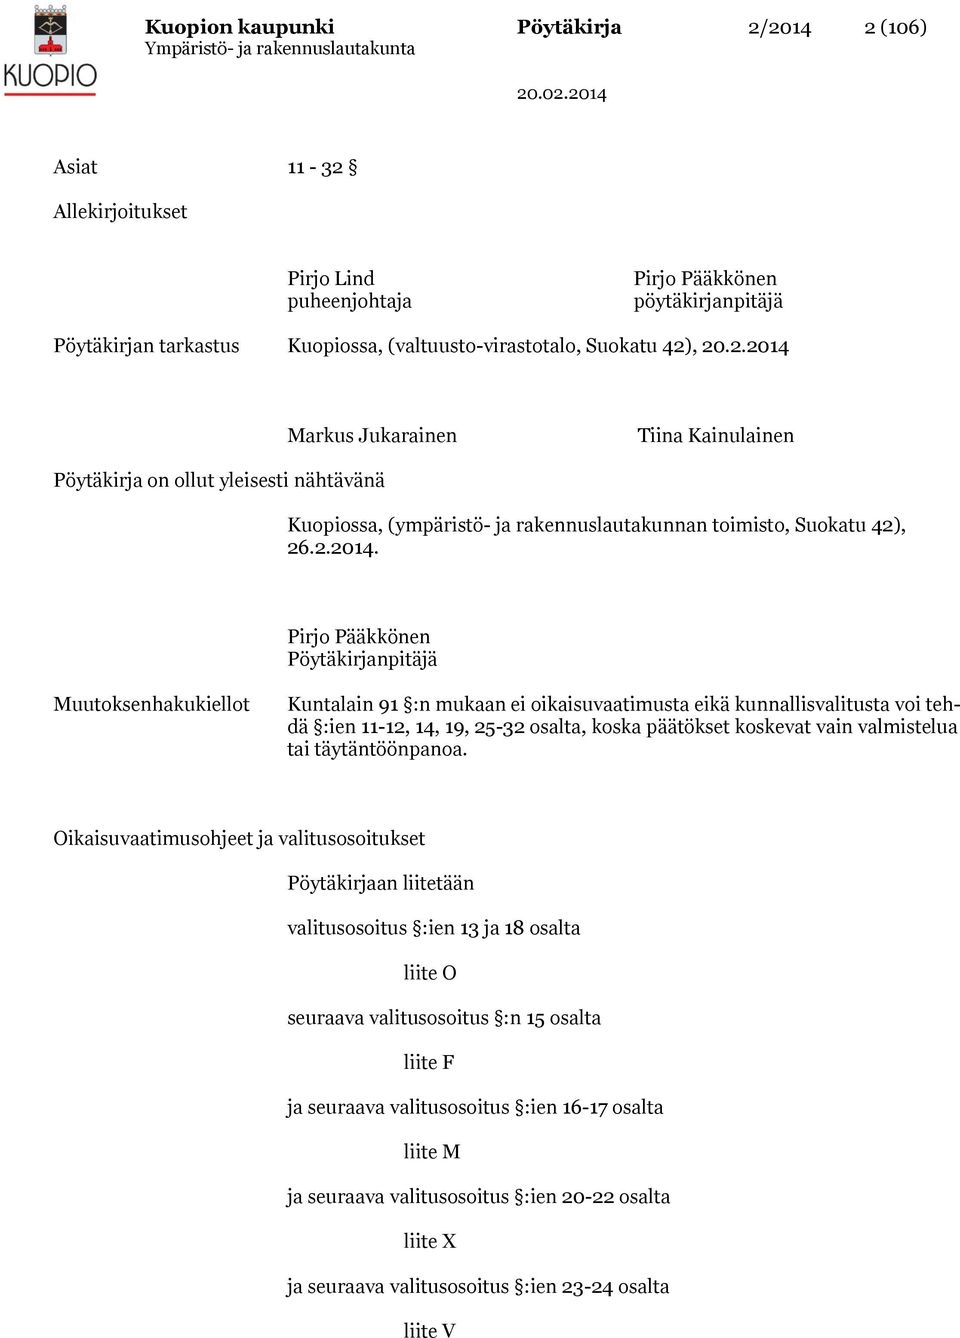 Markus Jukarainen Tiina Kainulainen Pöytäkirja on ollut yleisesti nähtävänä Kuopiossa, (ympäristö- ja rakennuslautakunnan toimisto, Suokatu 42), 26.2.2014.